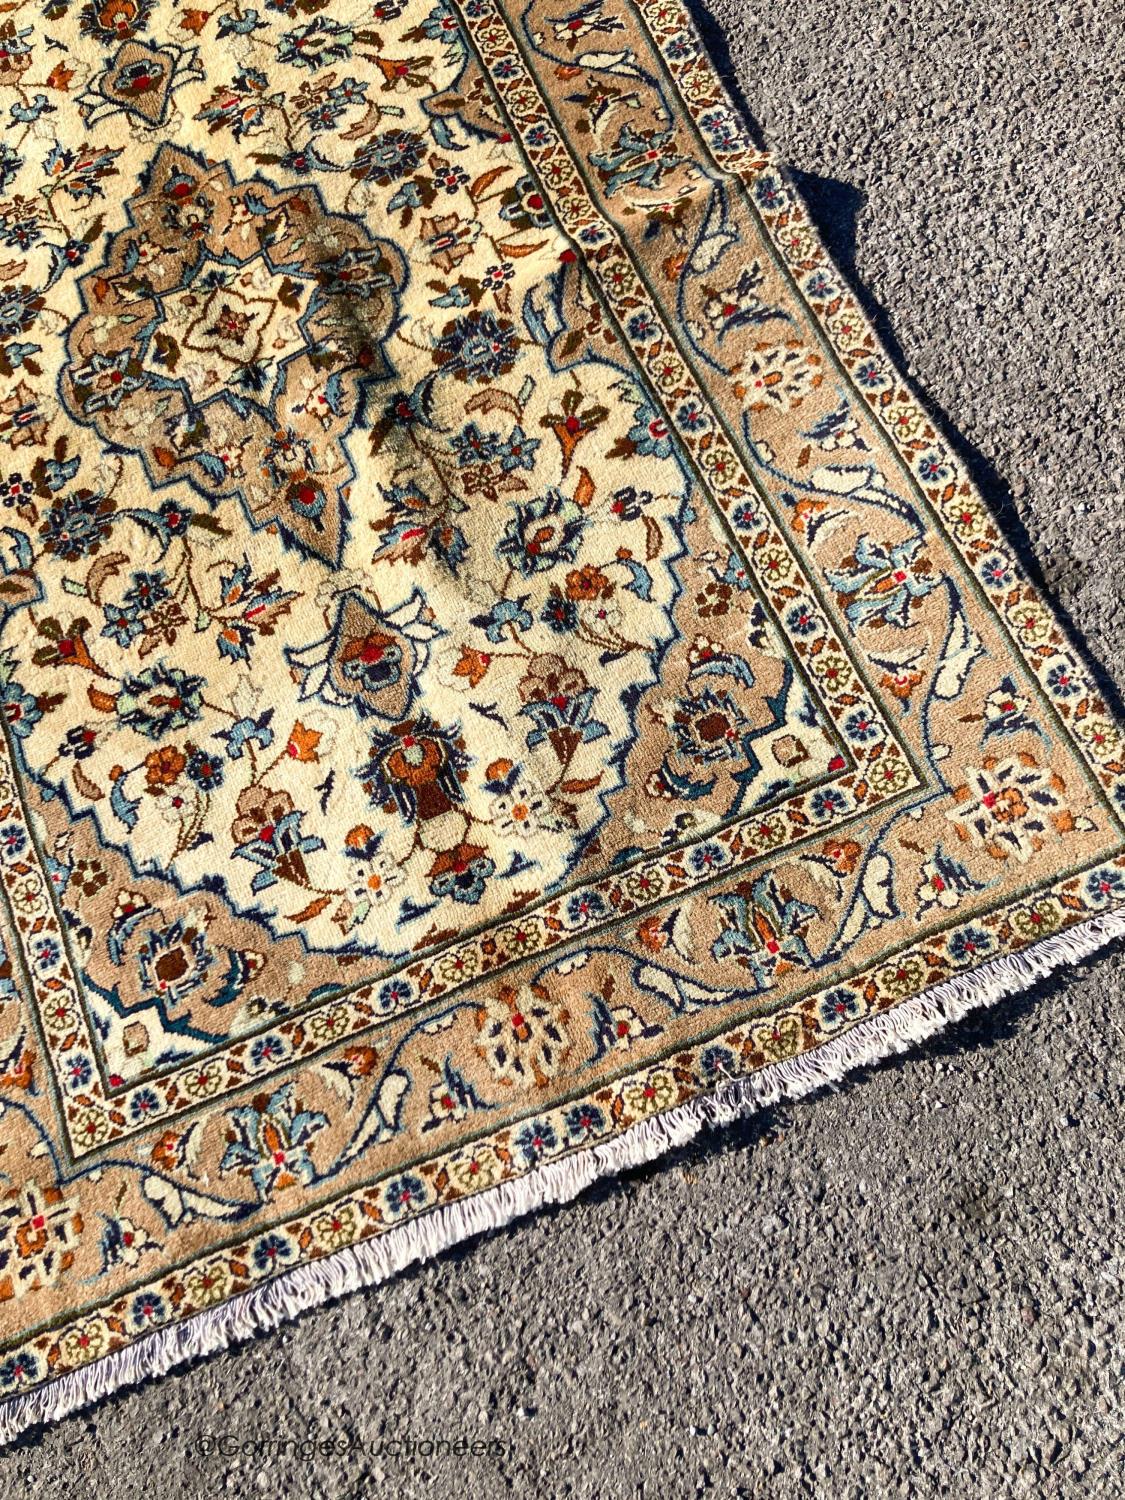 A Kashan rug, 150 x 98cm - Image 2 of 5